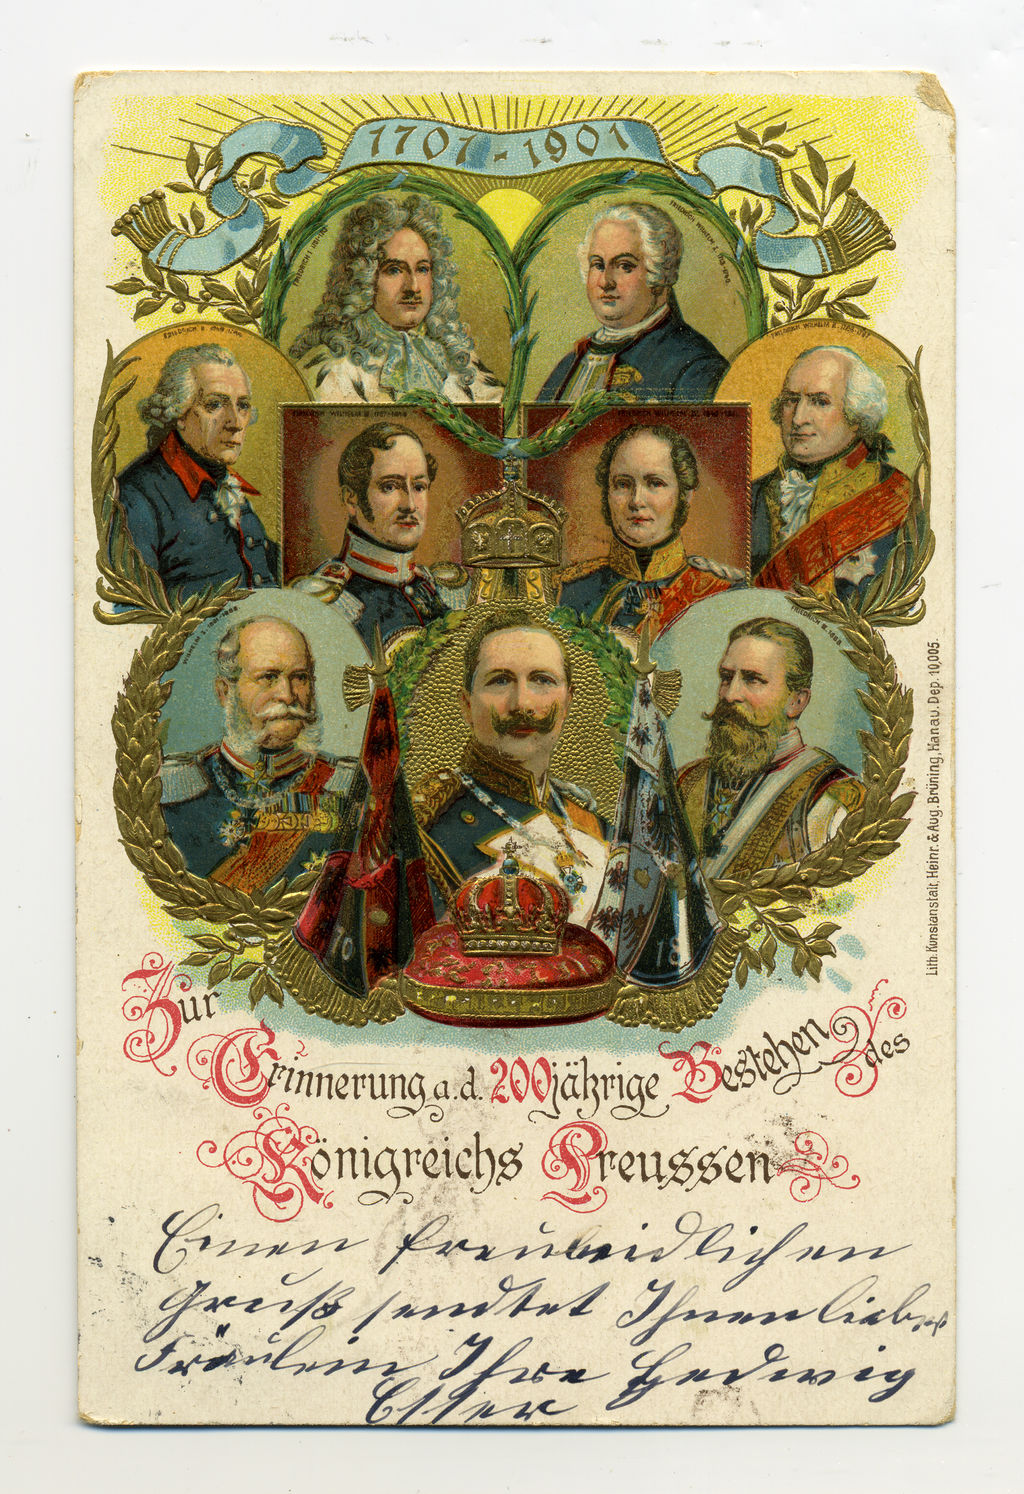 Postkarte: Jubiläum des Königreichs Preussen, 1901